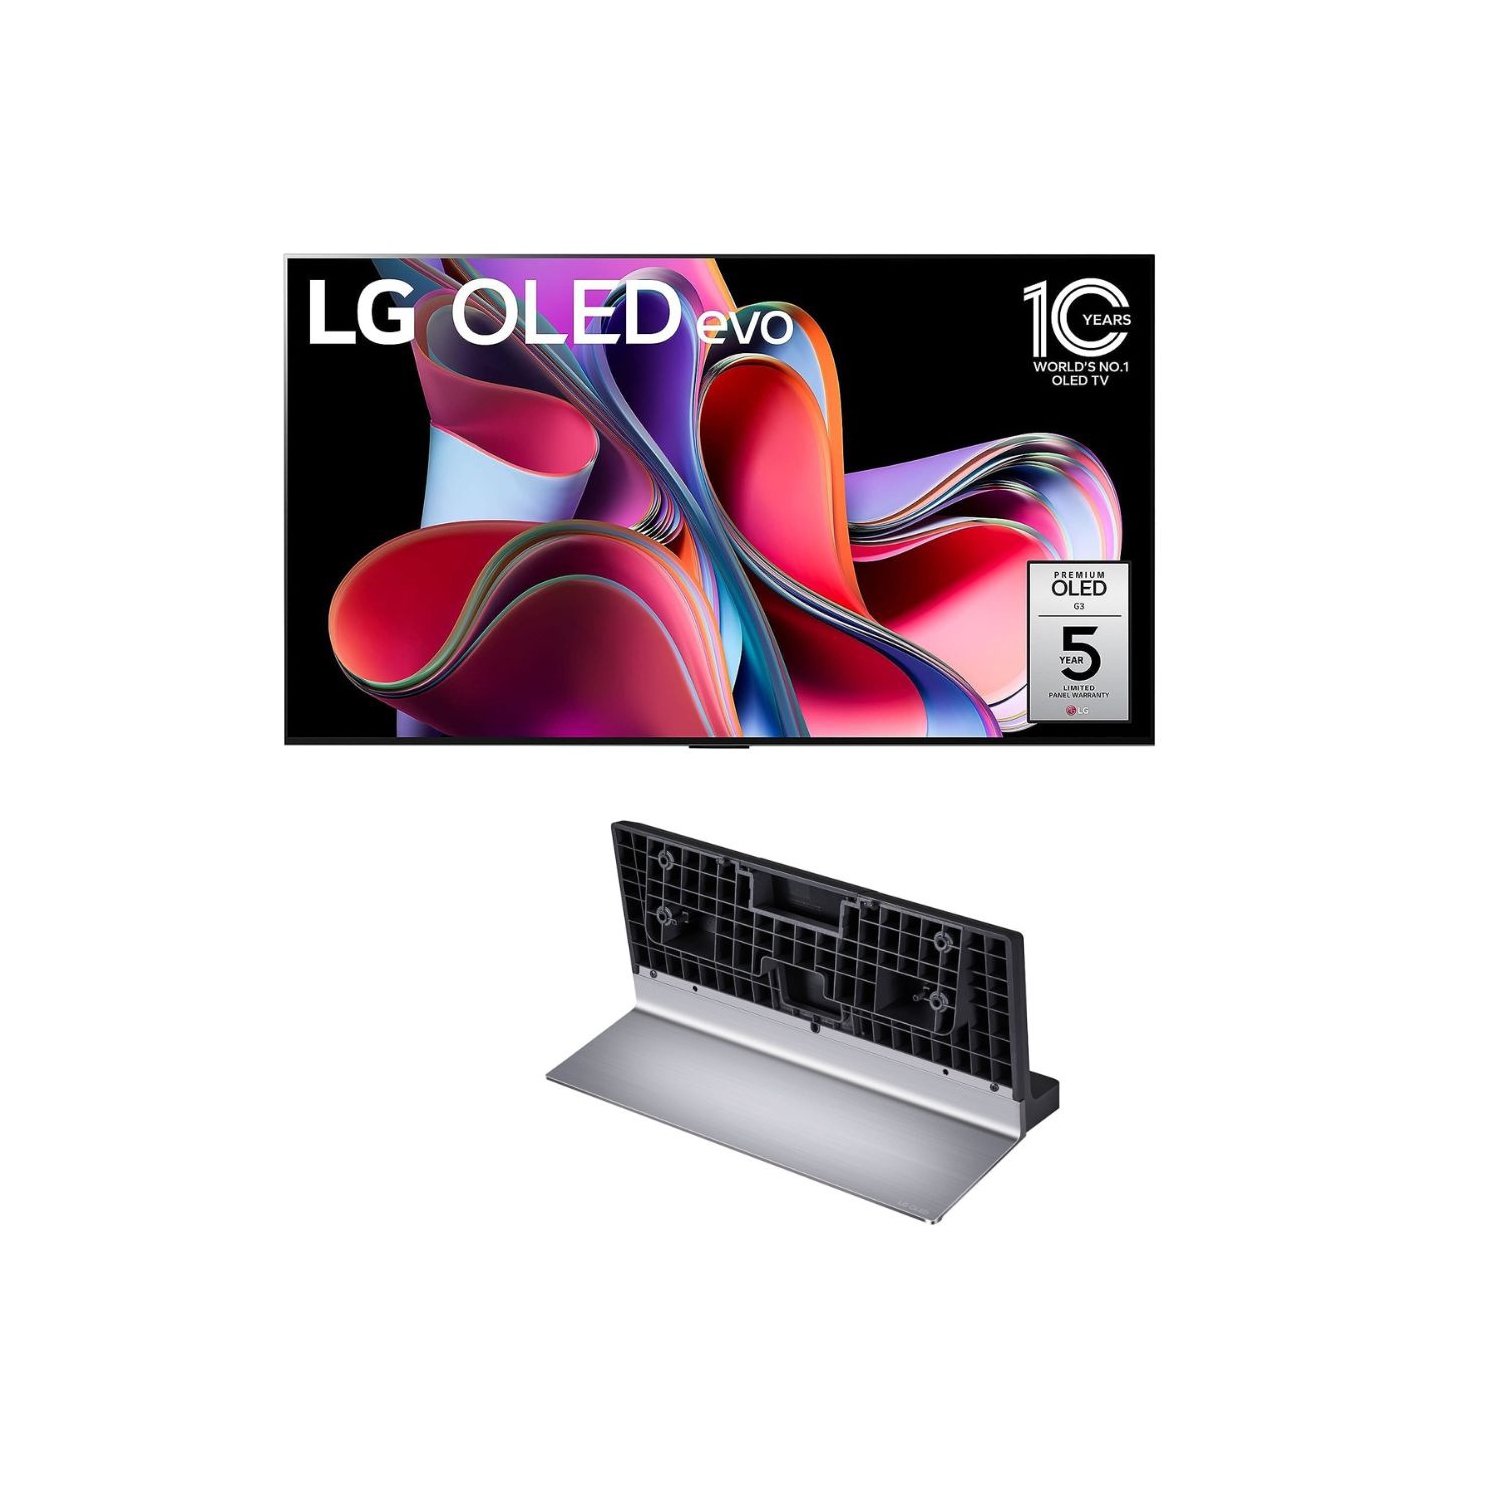 LG OLED 65" TV with G3 Pedestal Stand [SR-G3WU55 & OLED65G3PUA]